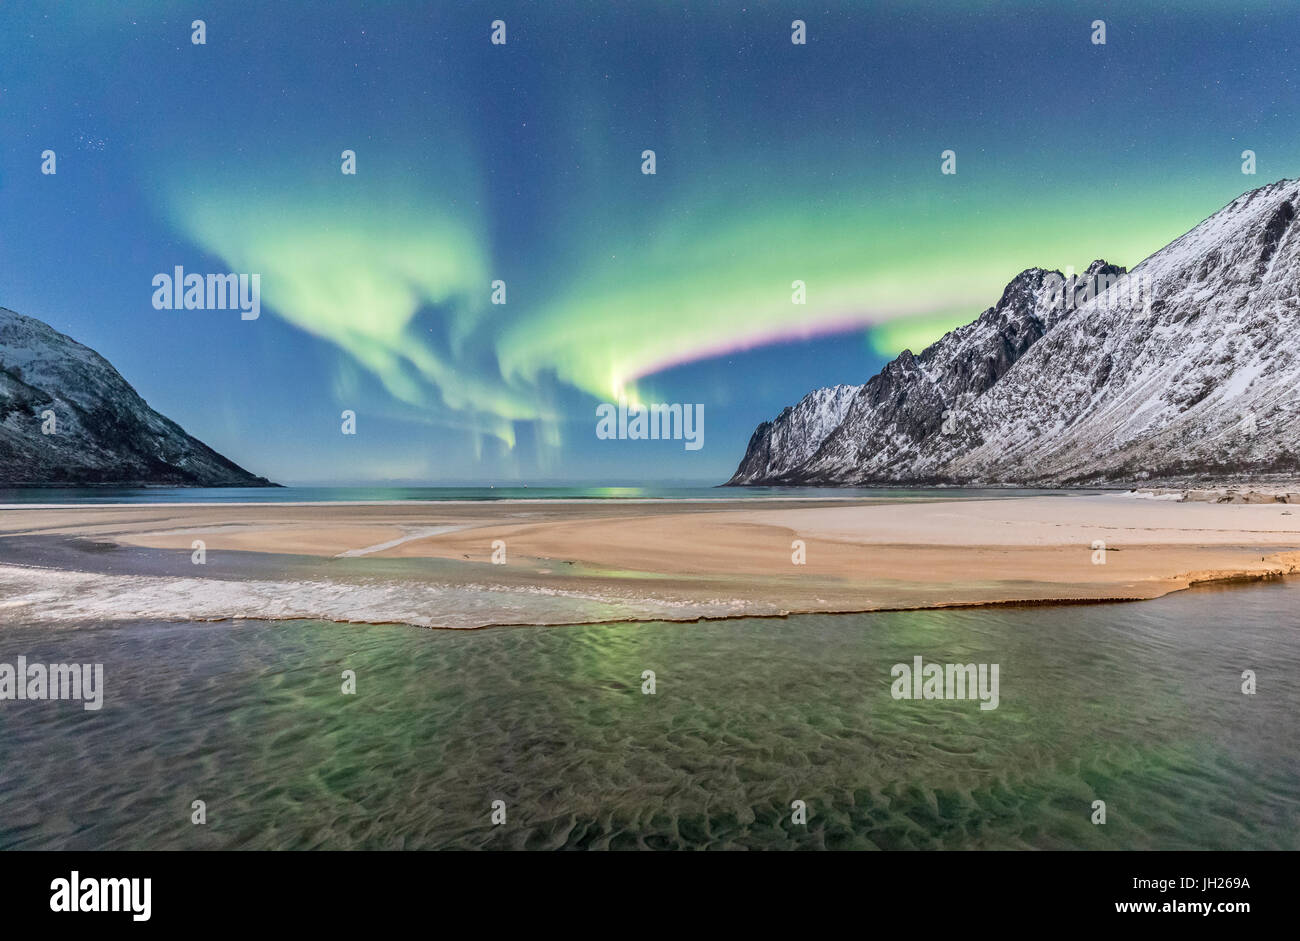 Luci verdi di Northern Lights riflessa nel freddo mare circondato da vette innevate, Ersfjord, Senja, Troms, Norvegia Foto Stock